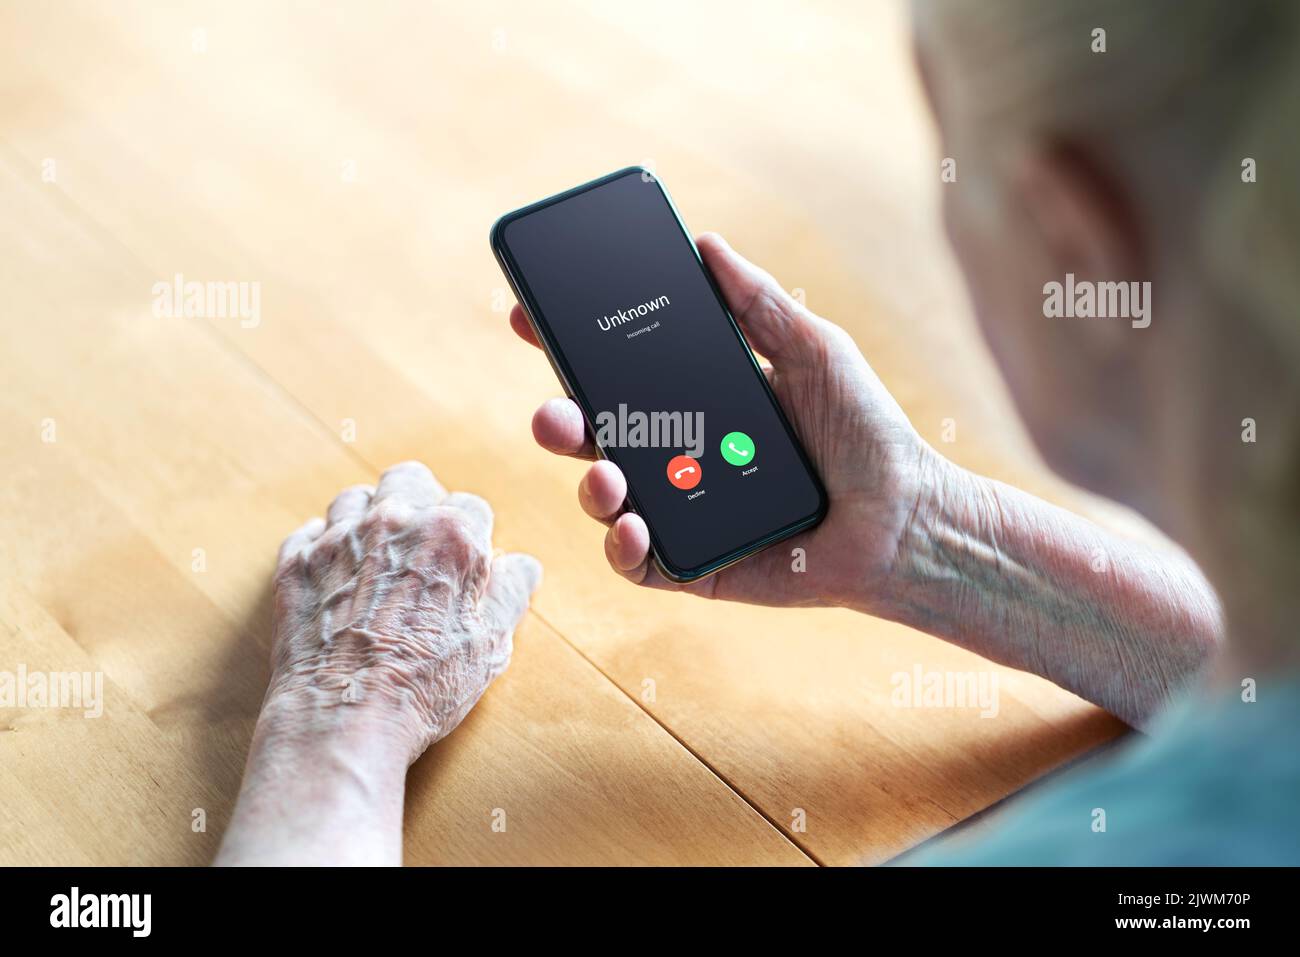 Telefonanruf an alte Frau von Betrug oder Betrug Anrufer. Ältester Senior antwortet auf unbekannte Nummer. Smartphone-Betrüger oder Mobile-Hoax, Wels oder Phishing. Stockfoto